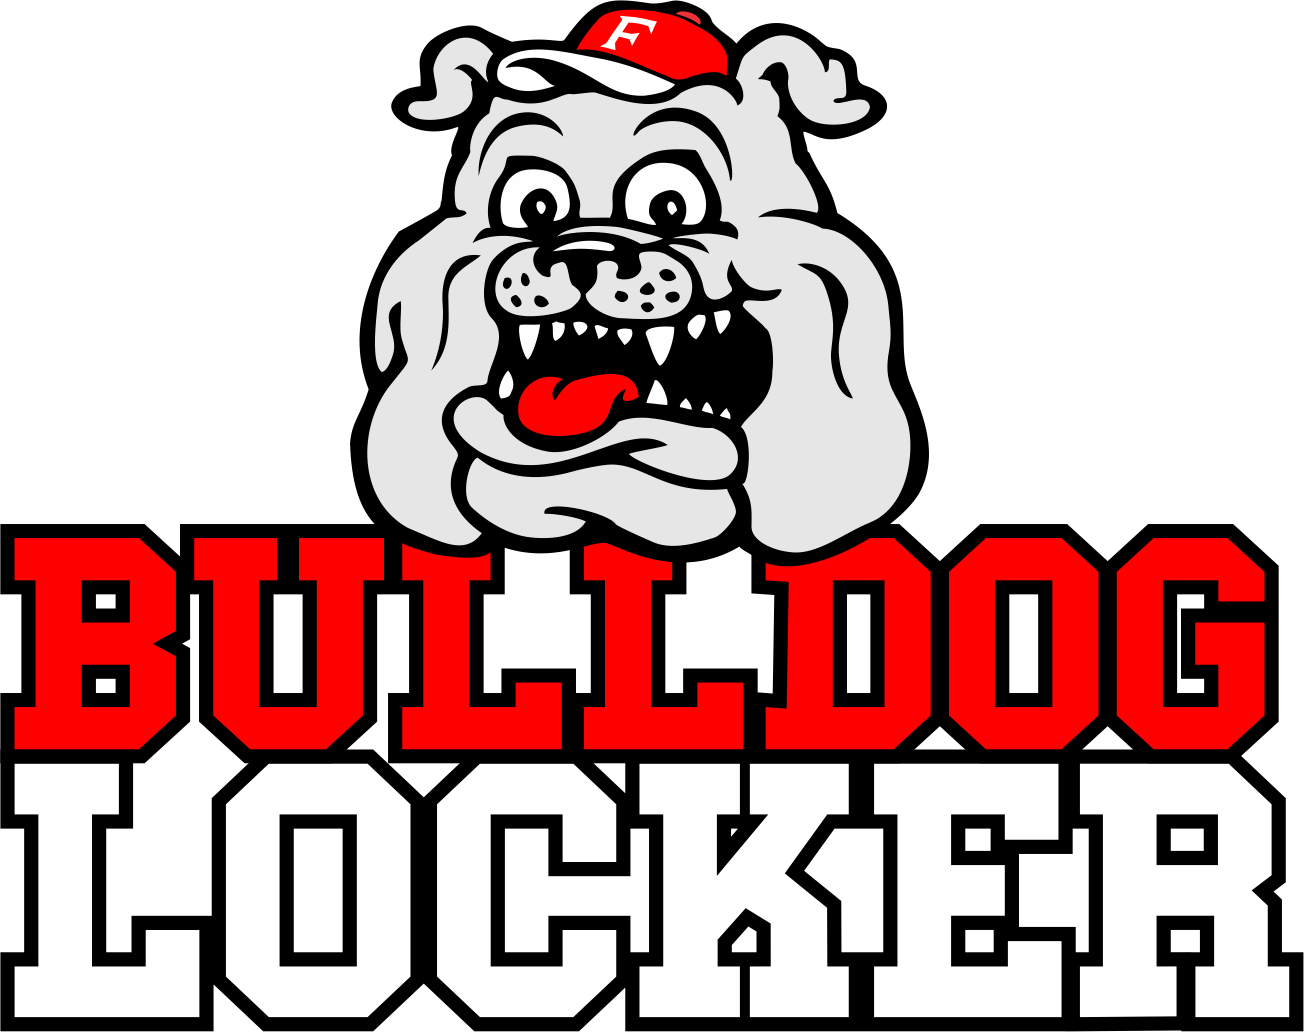 Bulldog Locker